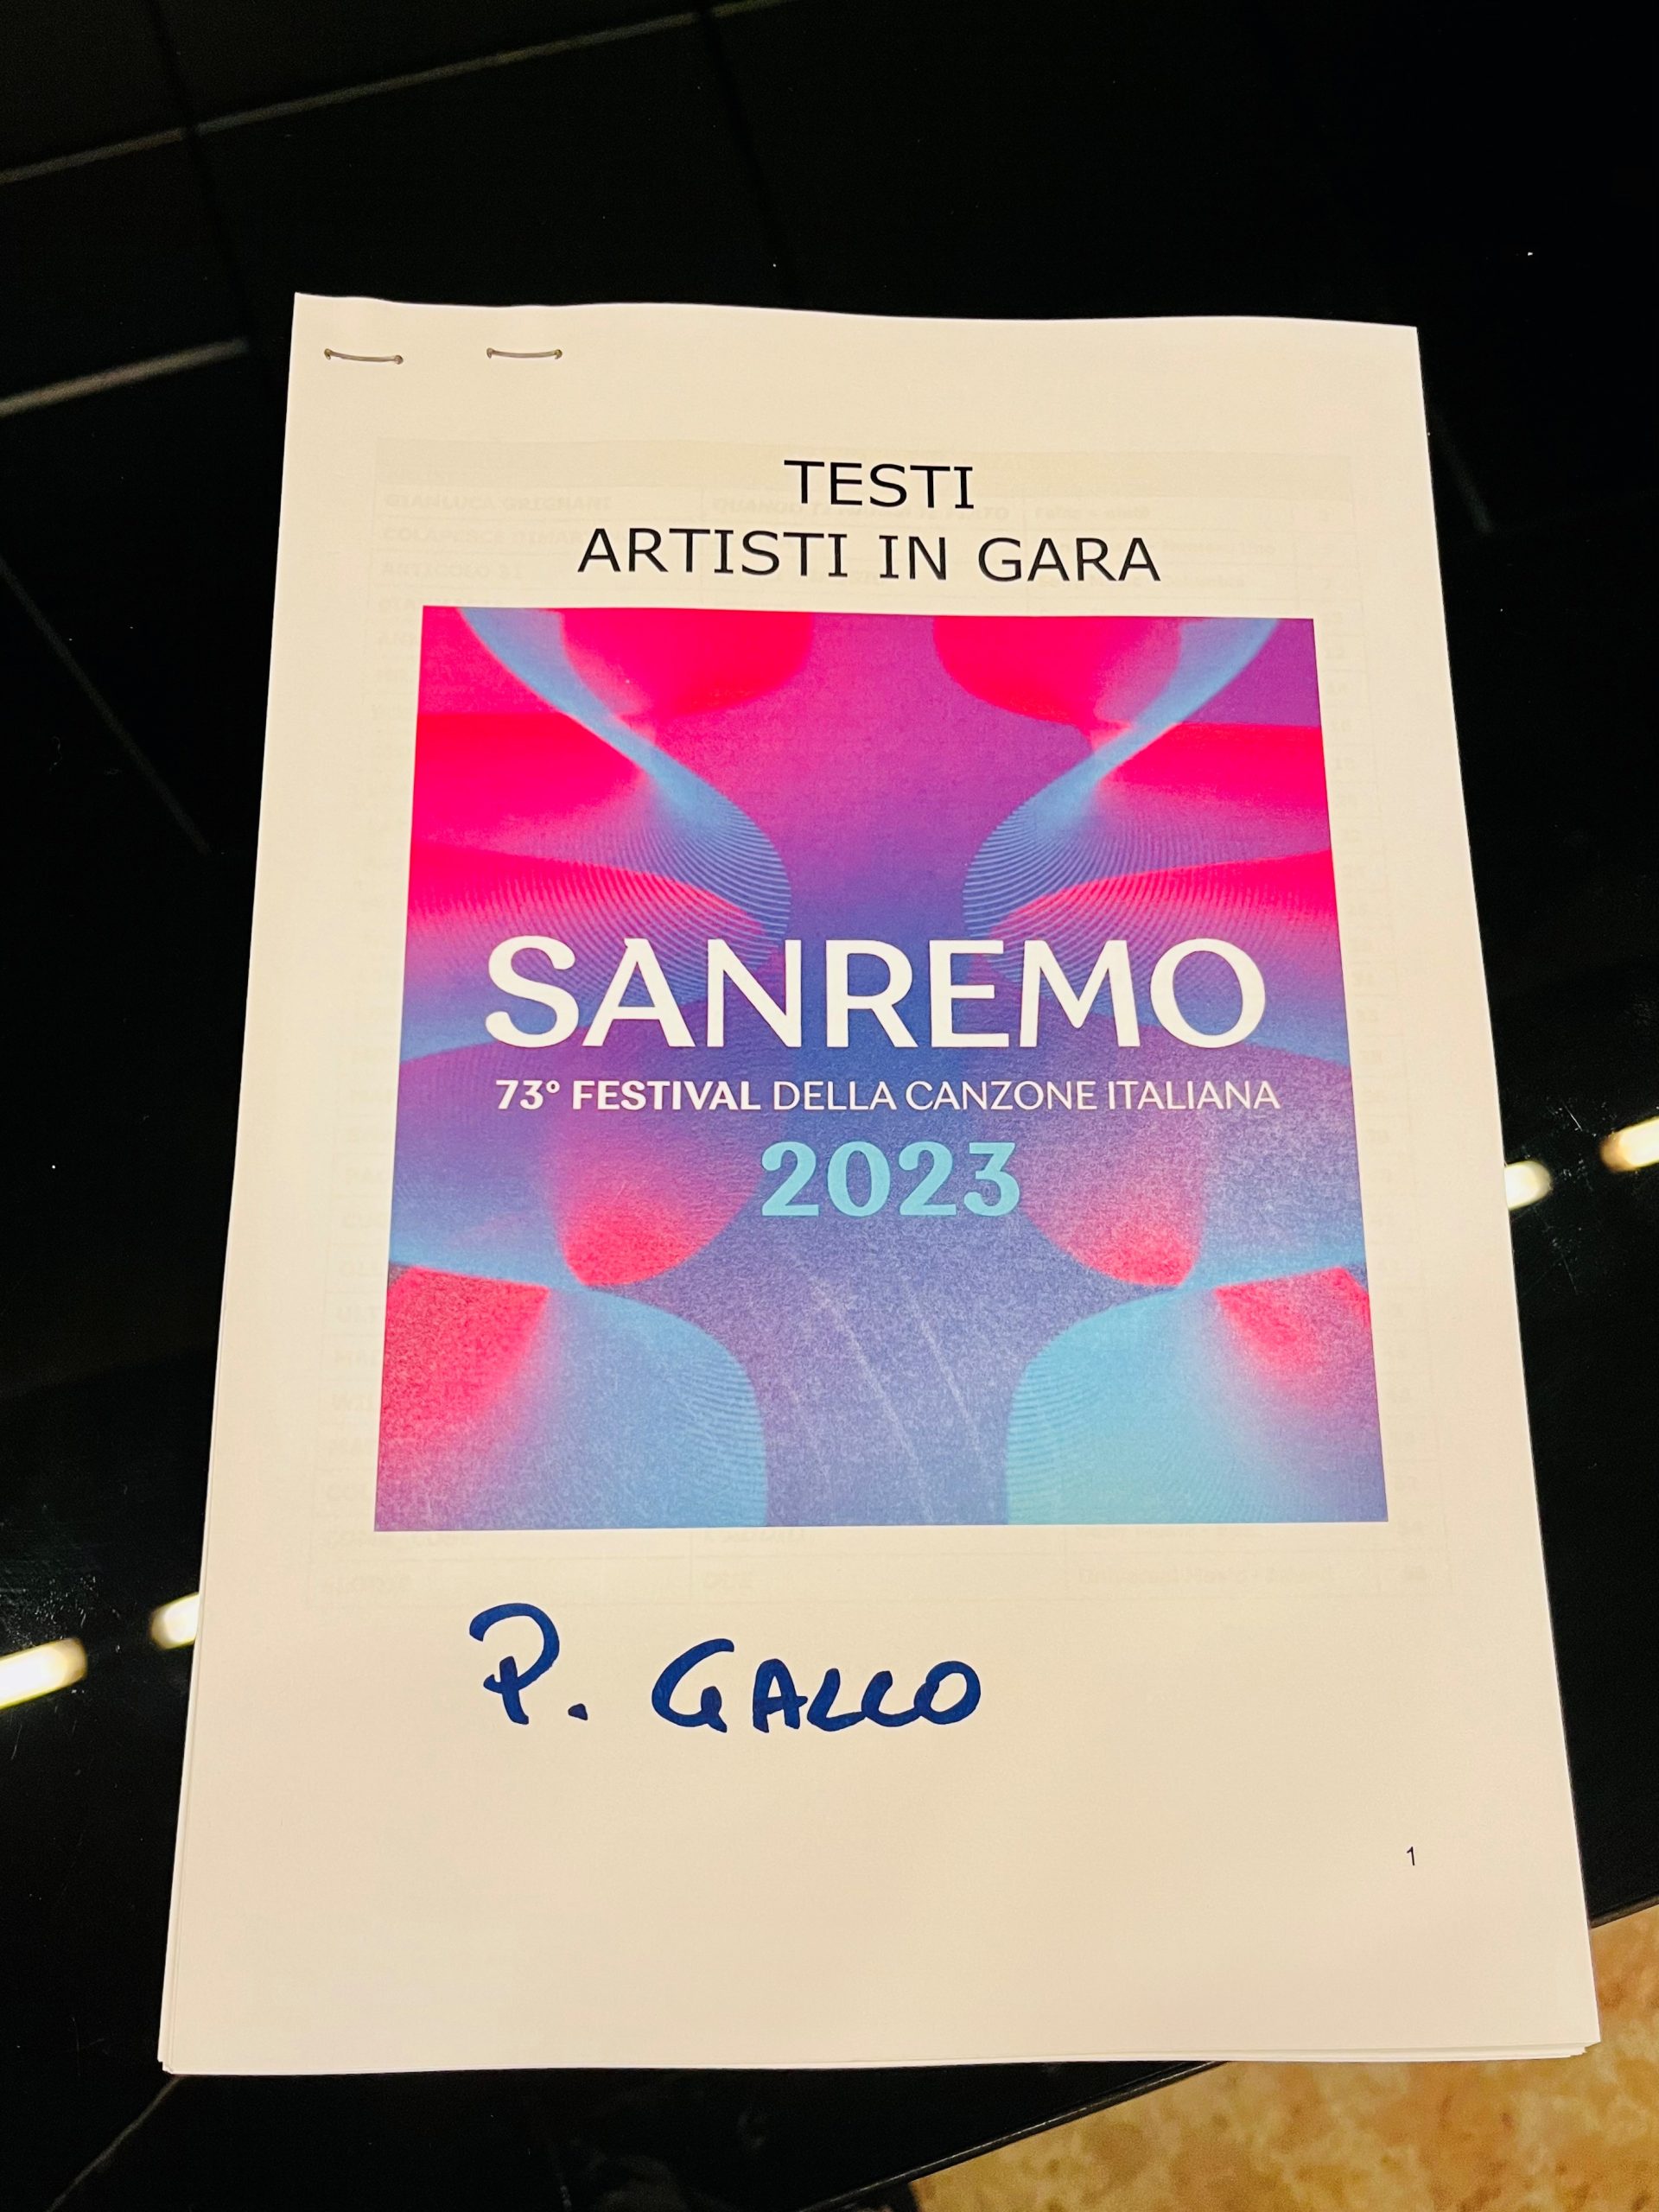 SANREMO 73: Come suonano le 28 canzoni in gara <BR> #SanremoFunky